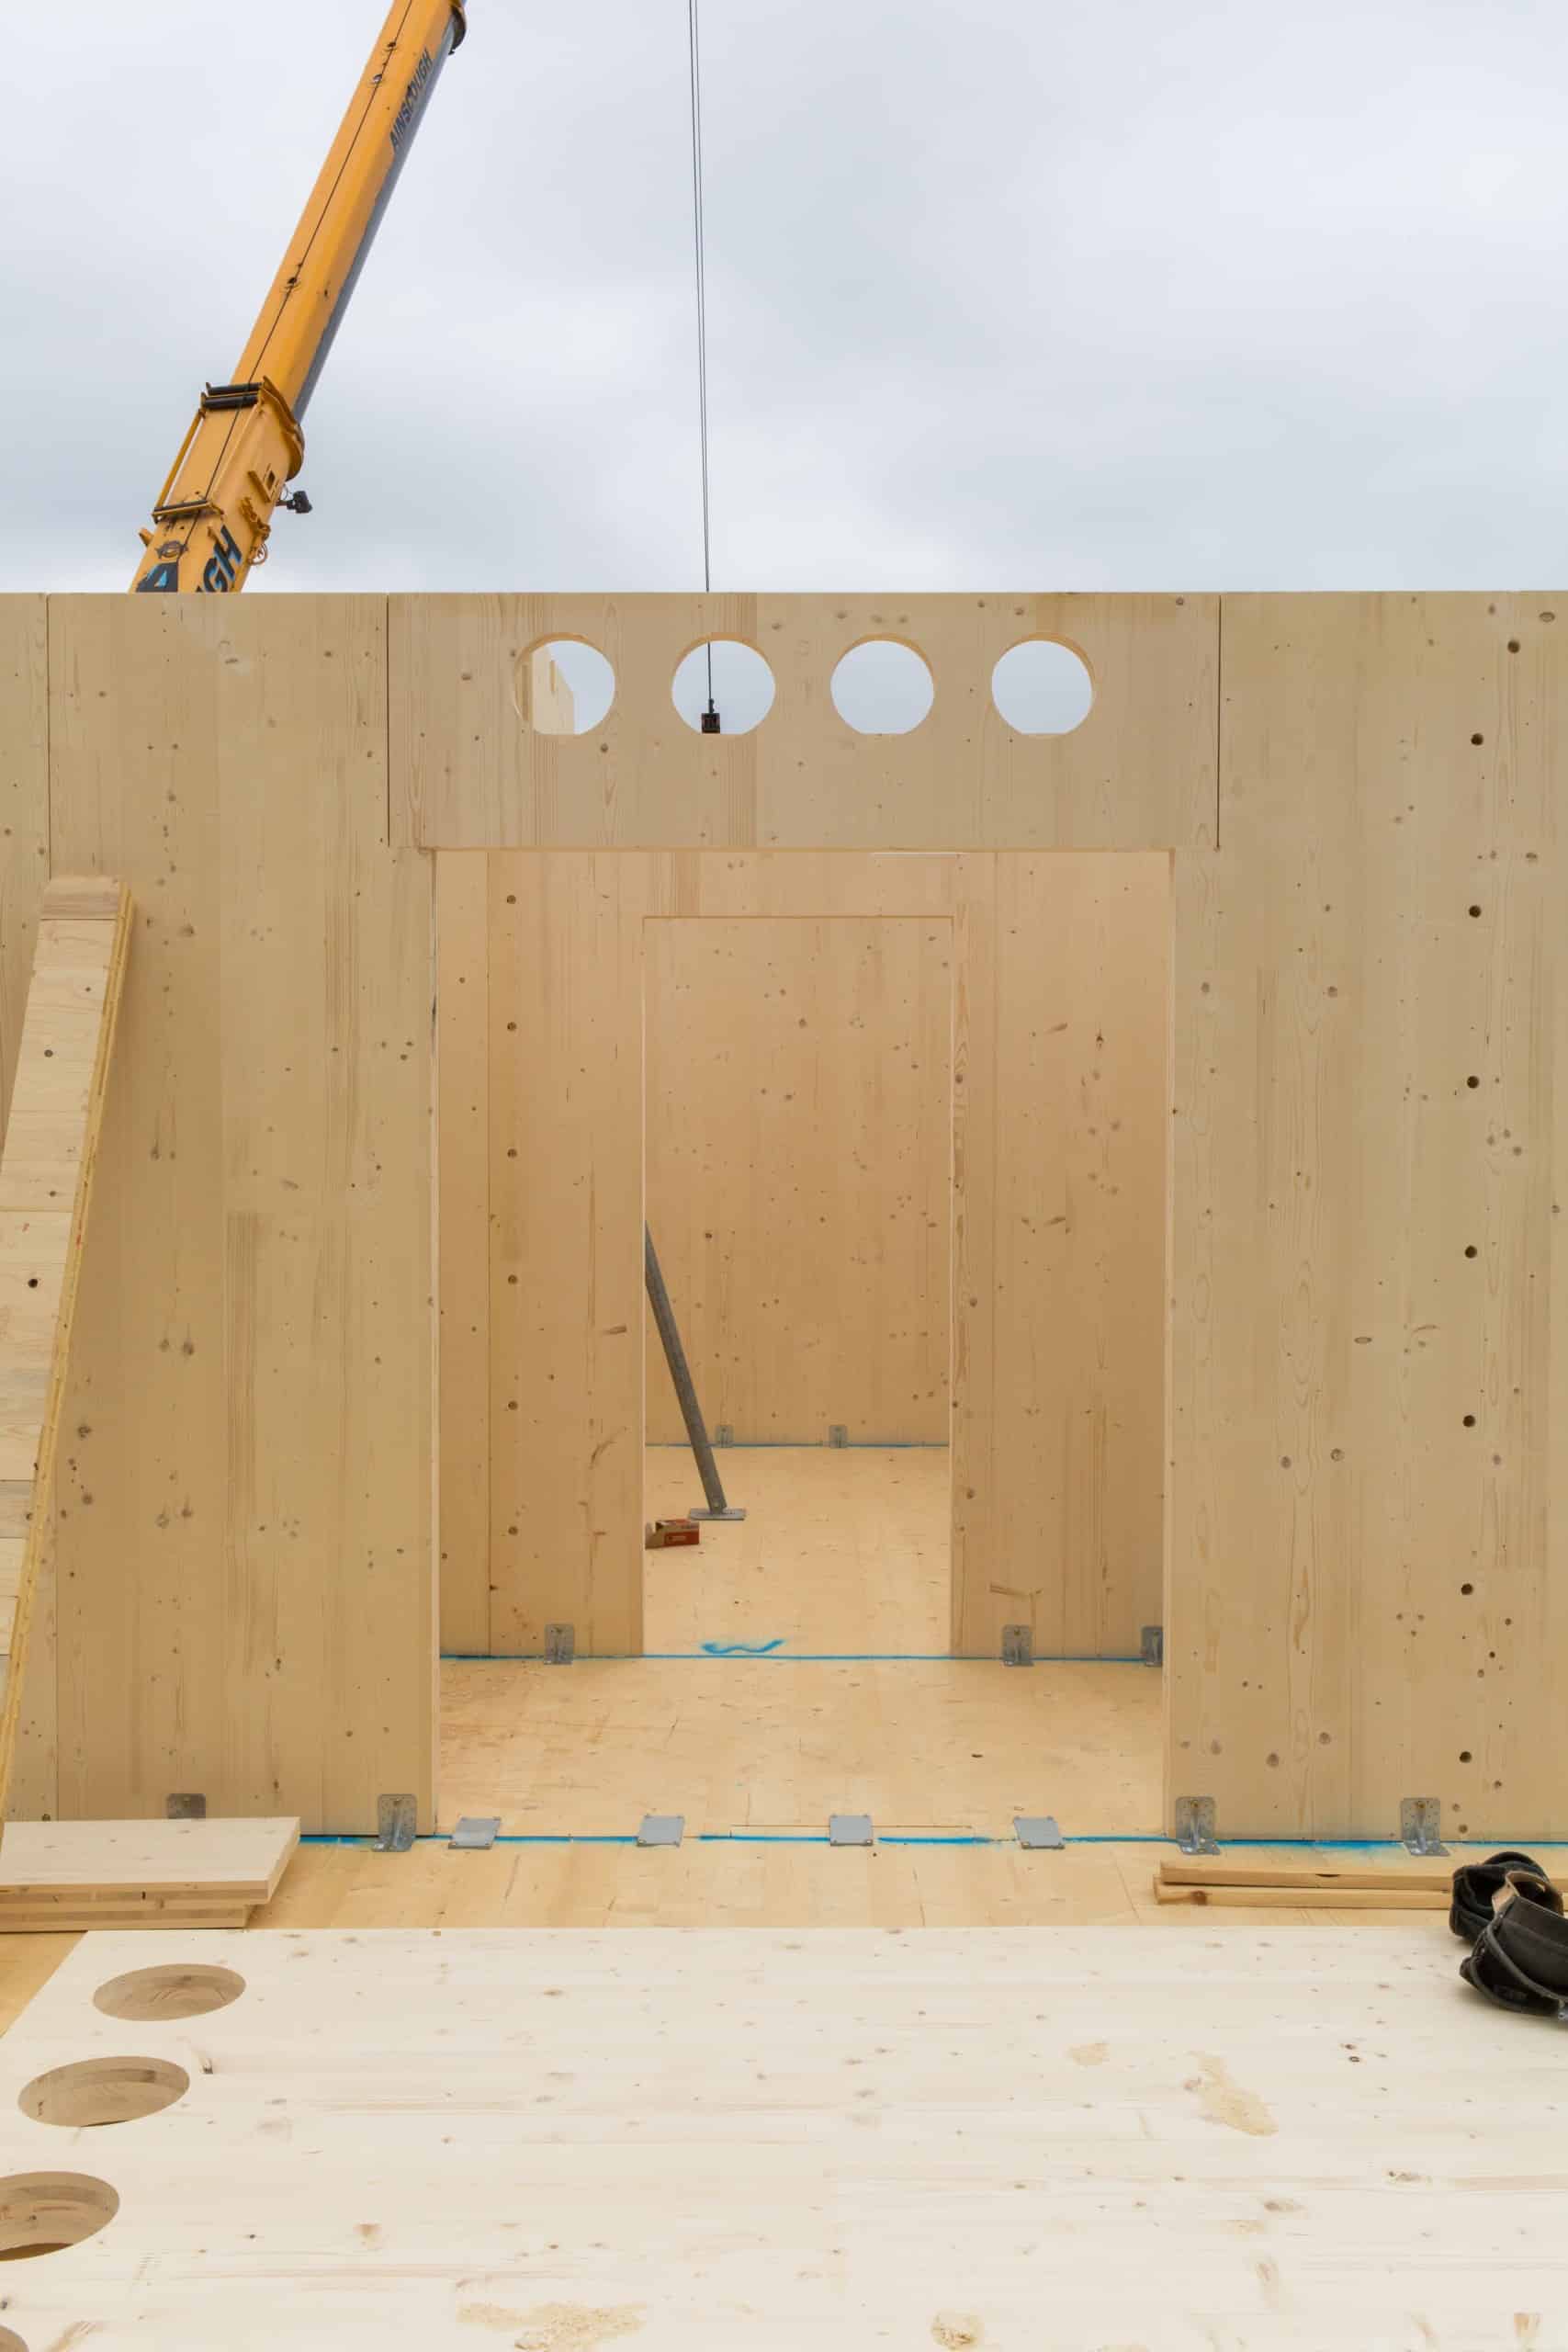 Errichtung eines Gebäudes in Holzbauweise, Blick auf Wand, die gerade aufgestellt wird, im Hintergrund ist ein Kran angeschnitten. Dyvik Kahlen Architects, Kindergarten und Gemeindezentrum, London, Foto: Antoine Espinasseau